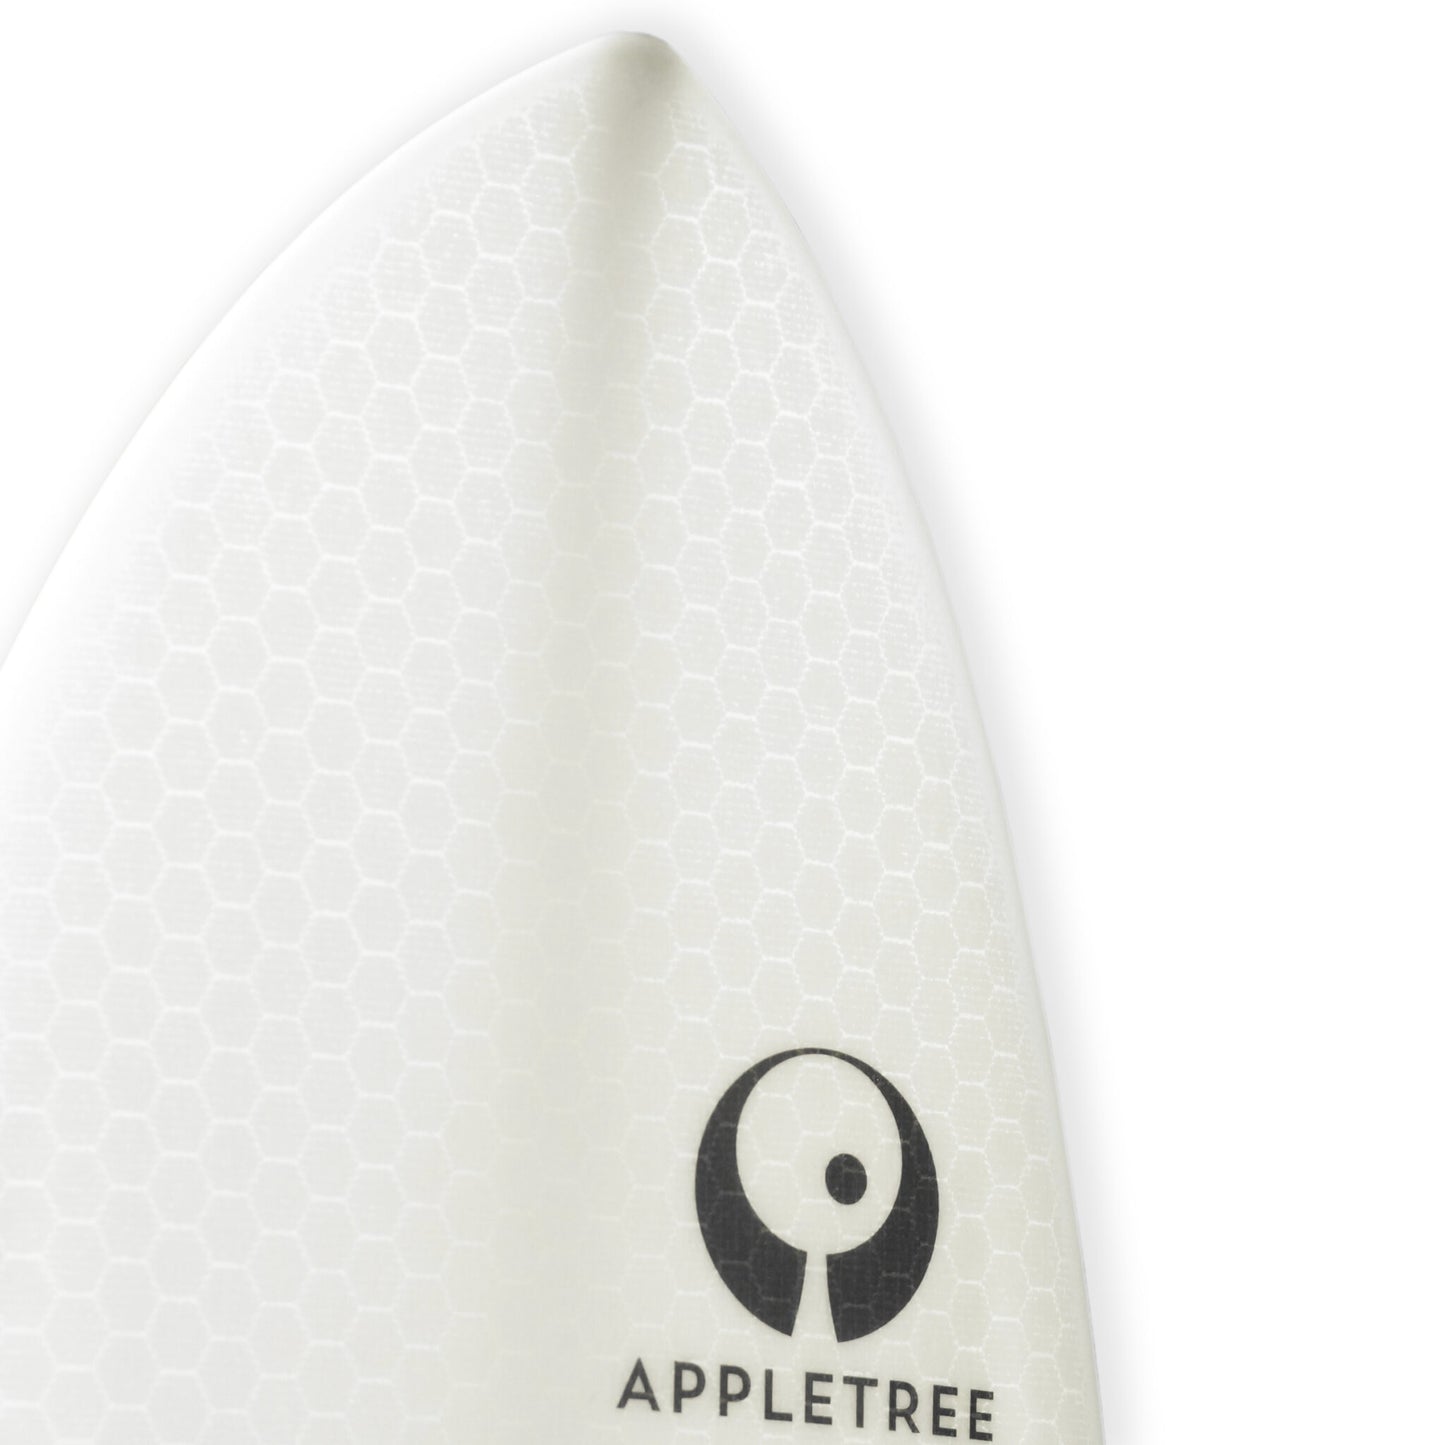 Appletree Klokhouse Noseless Kite Surfboard